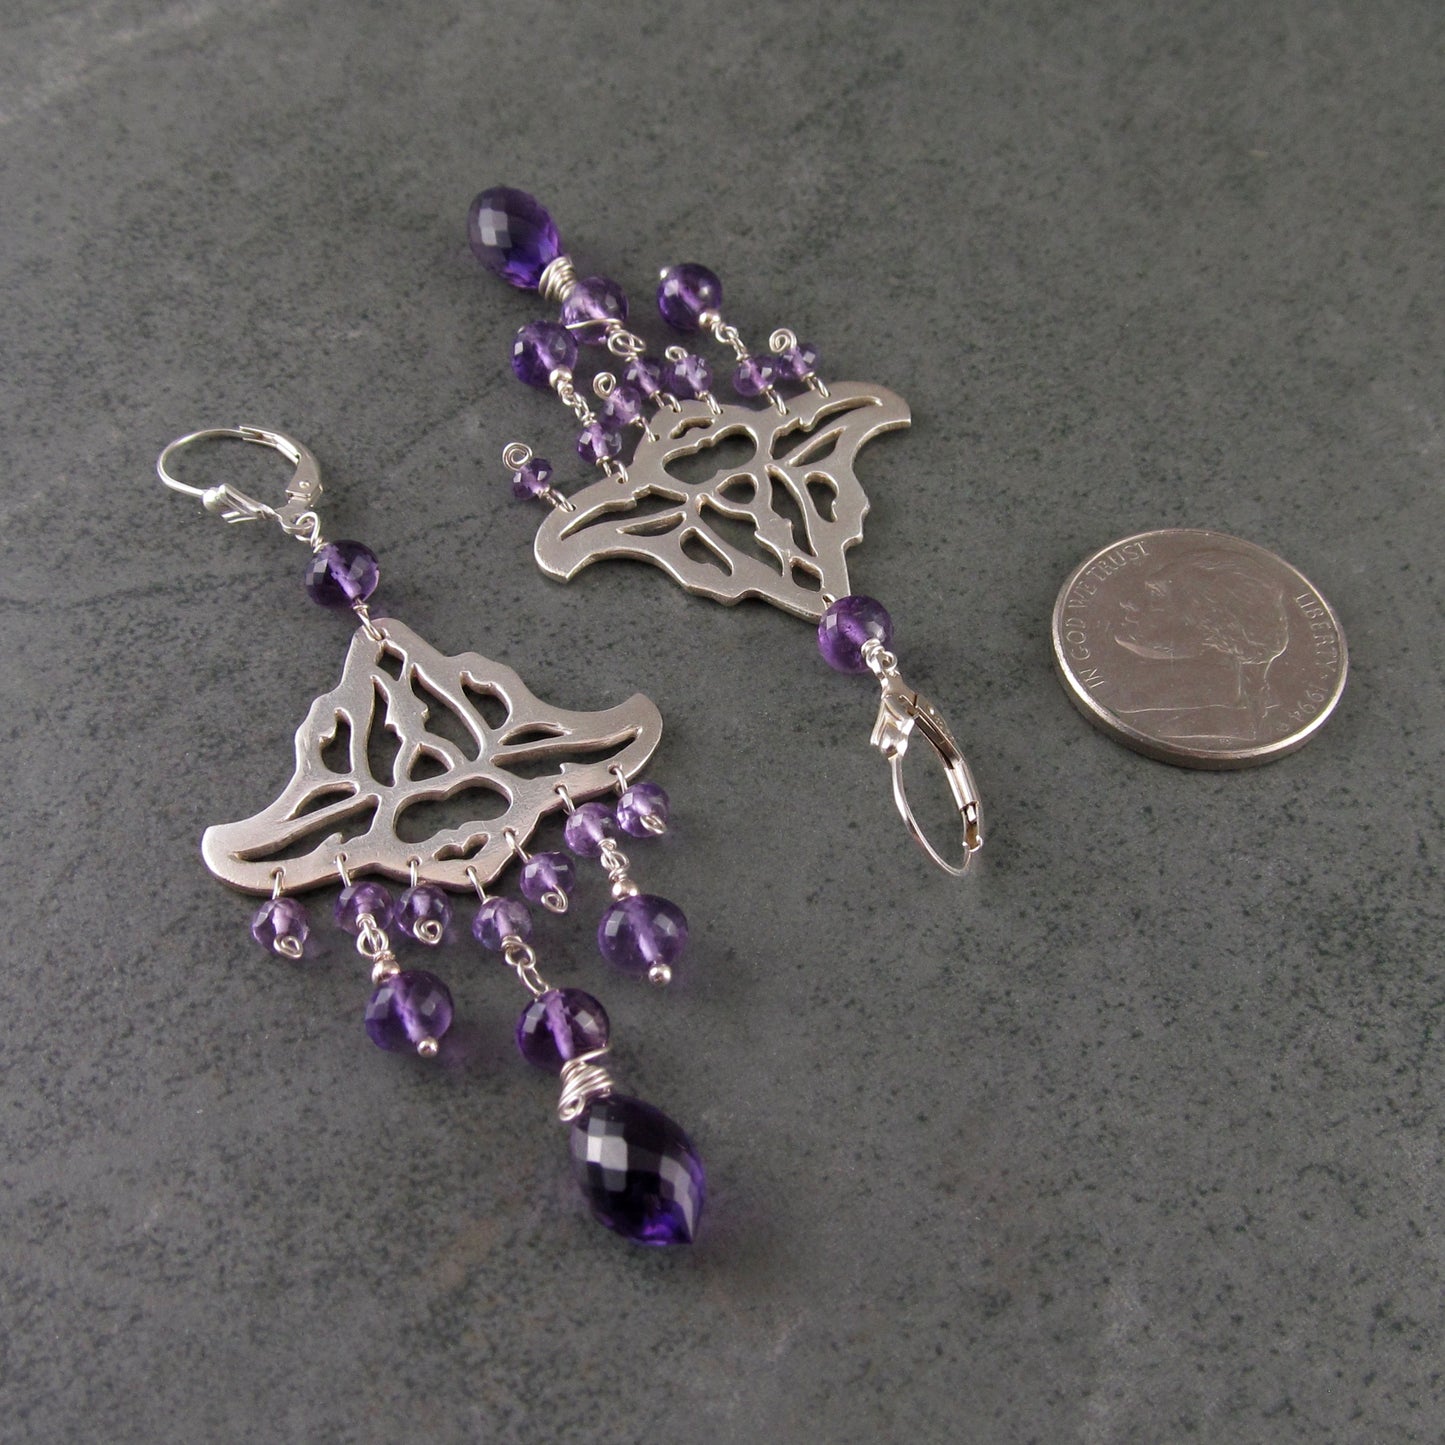 Amethyst chandelier earrings, handmade recycled sterling silver earrings-OOAK February birthstone jewelry